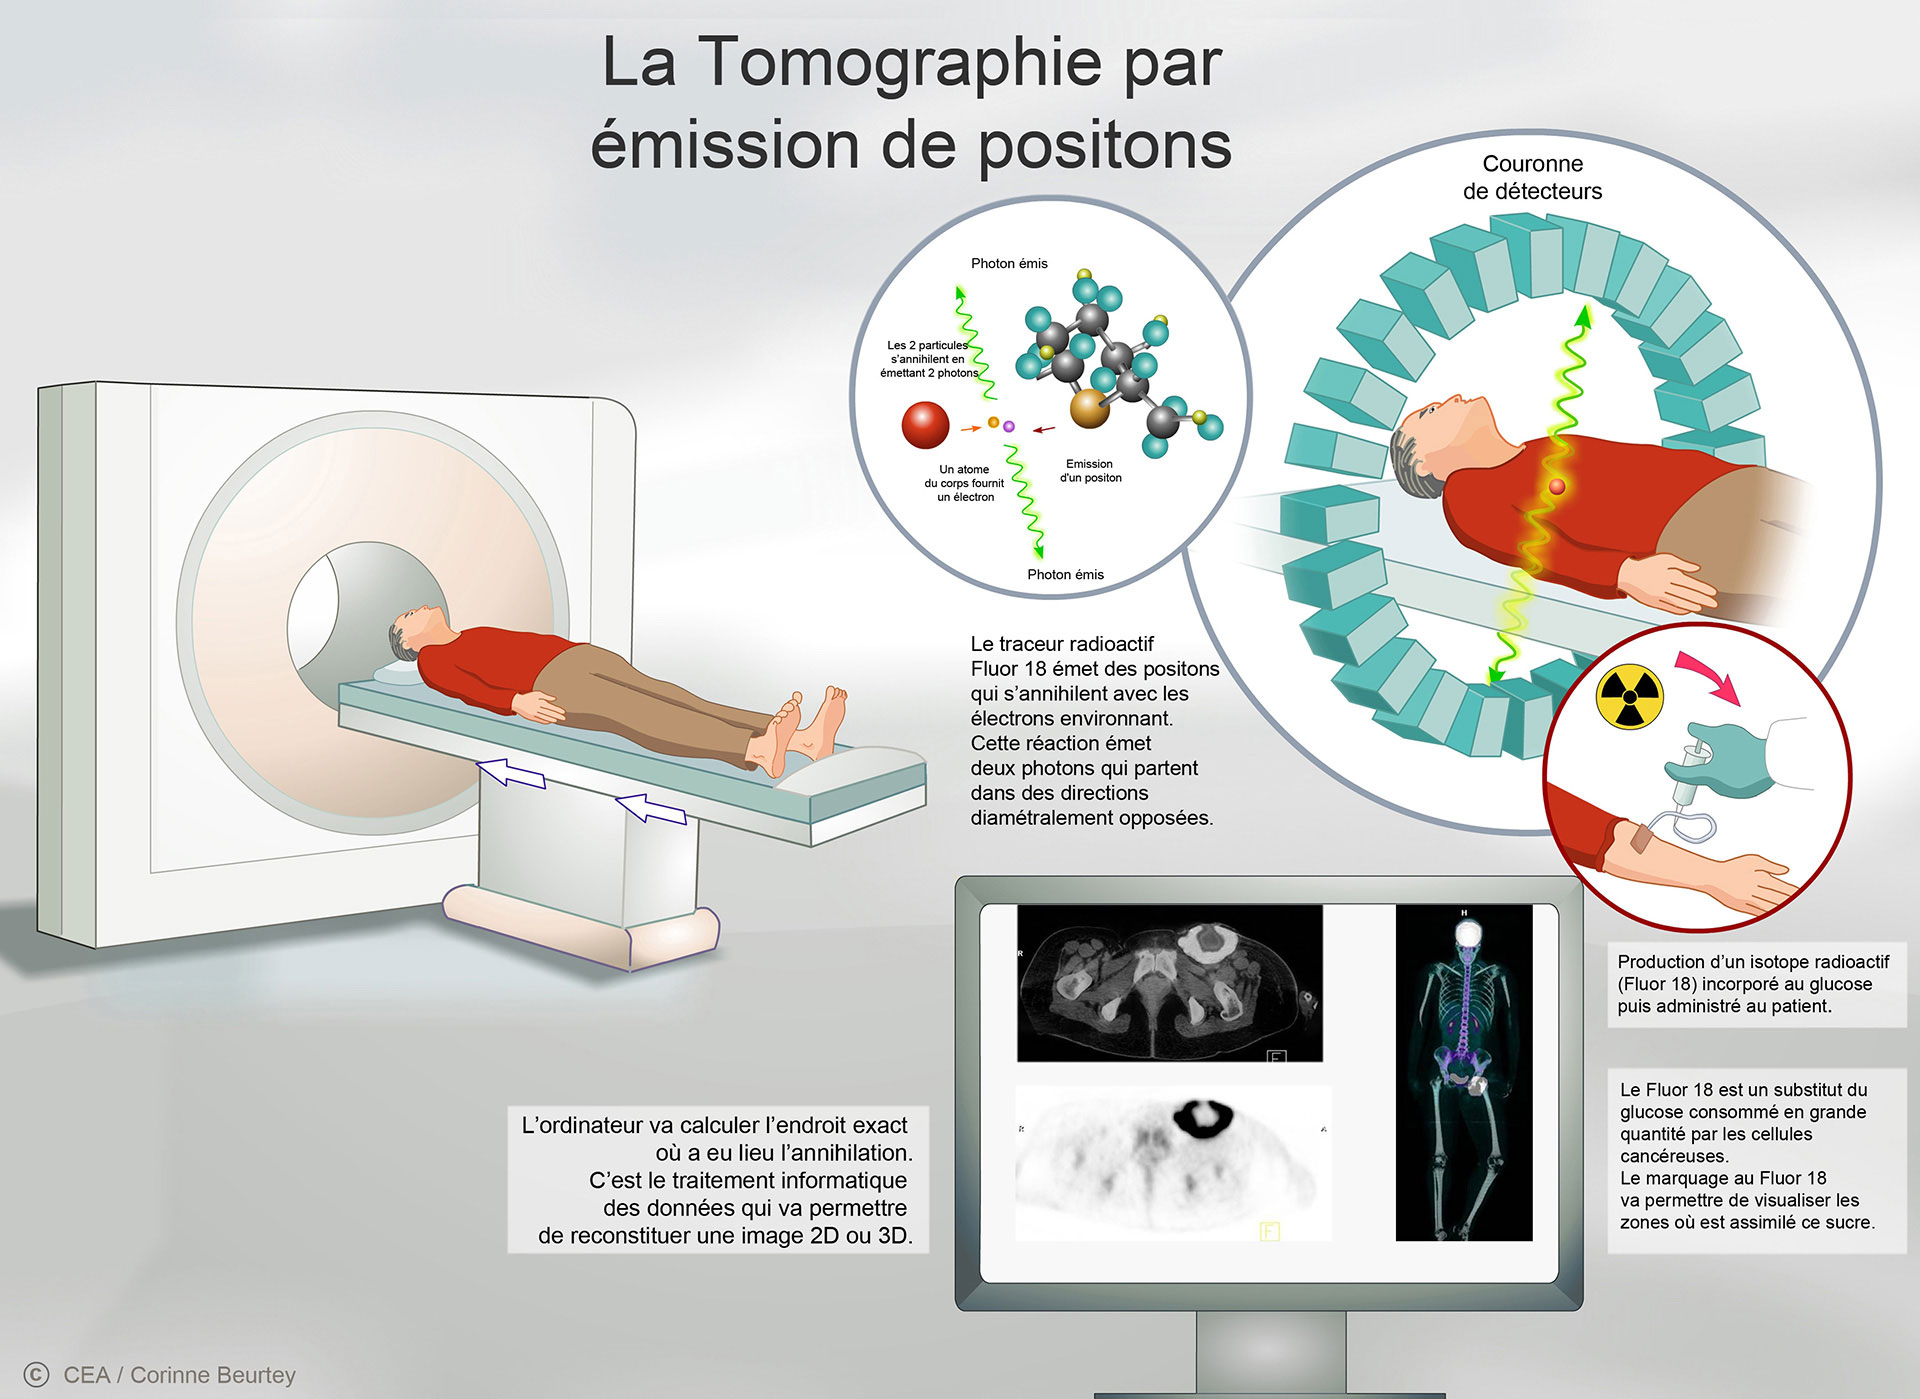 Le principe de la tomographie par émission de positons